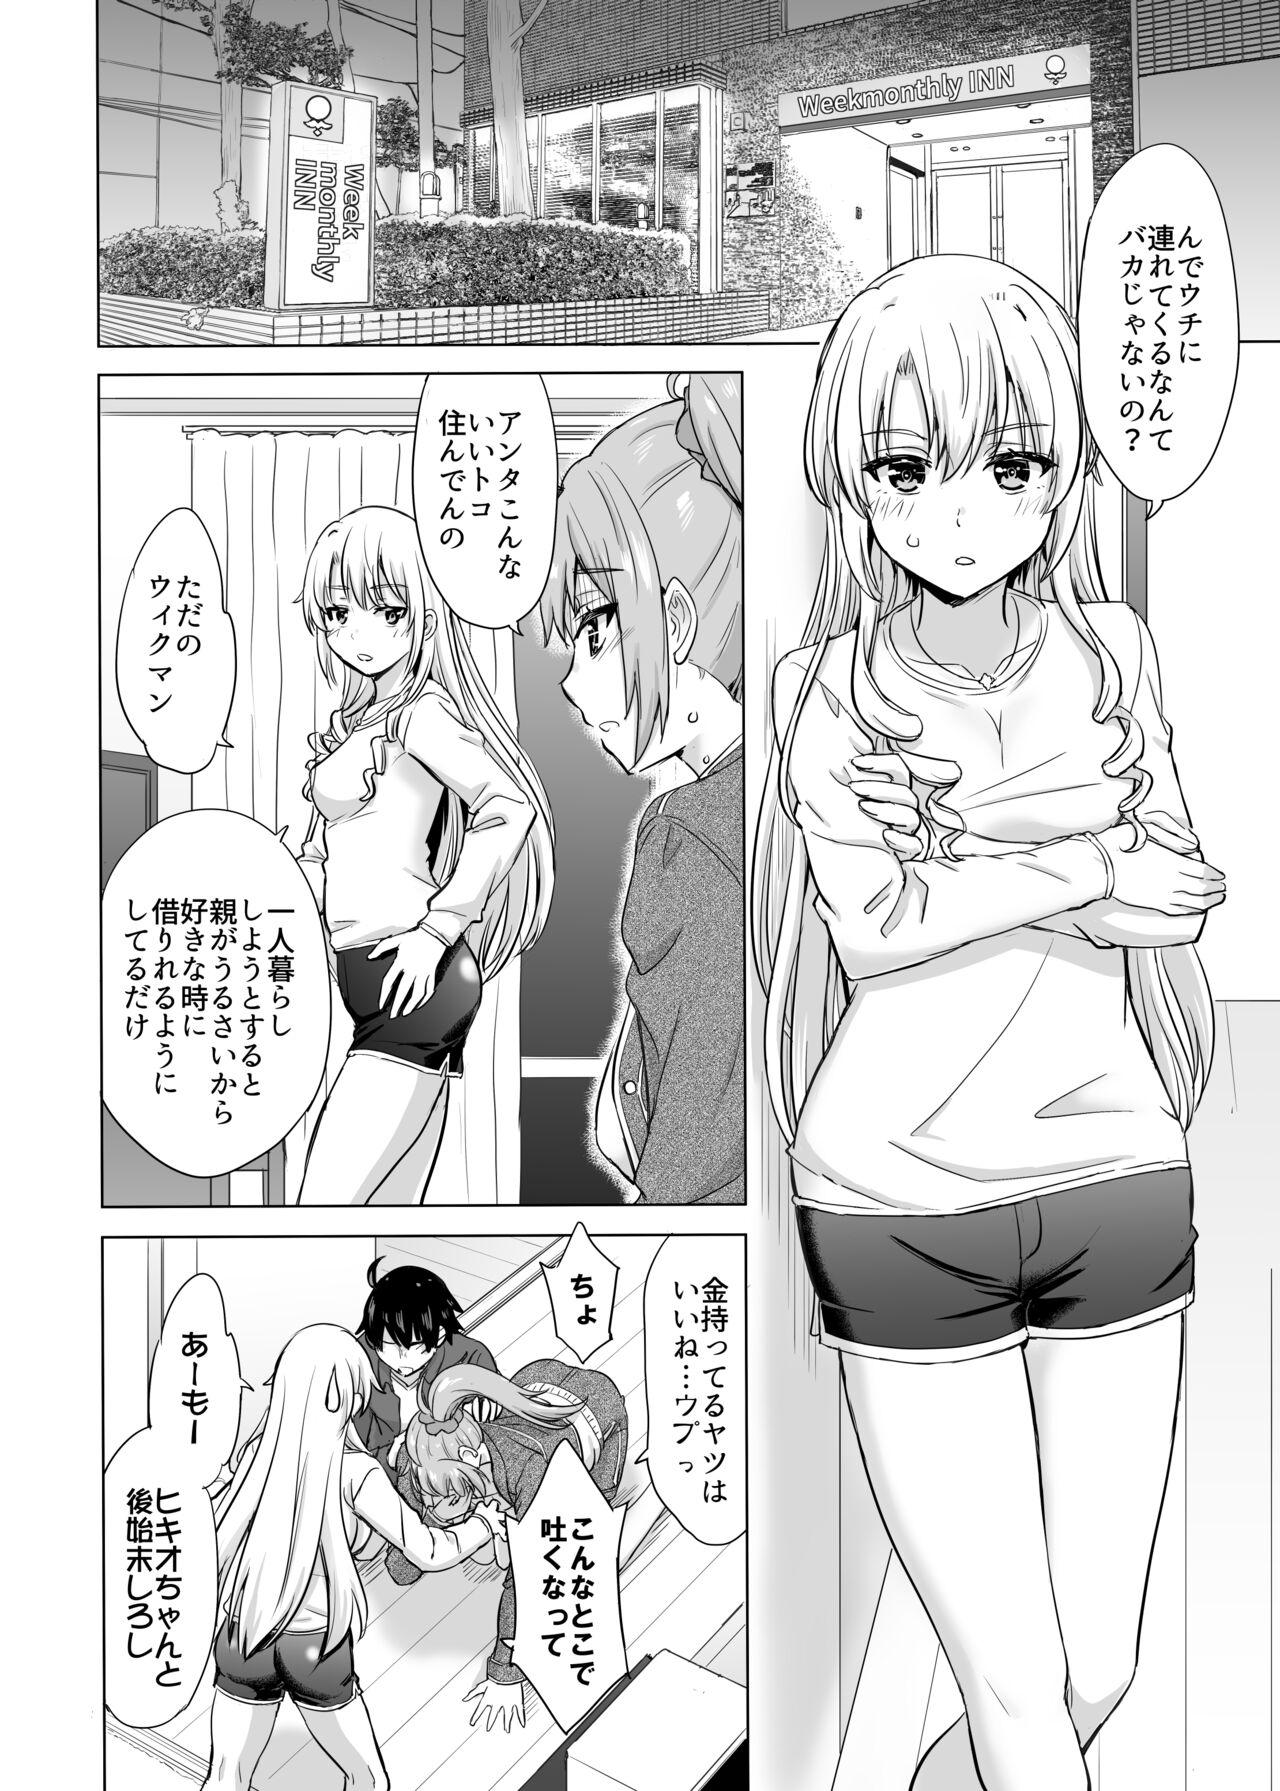 Camshow Ashi-san Saki Saki Manga - Yahari ore no seishun love come wa machigatteiru Rope - Page 2